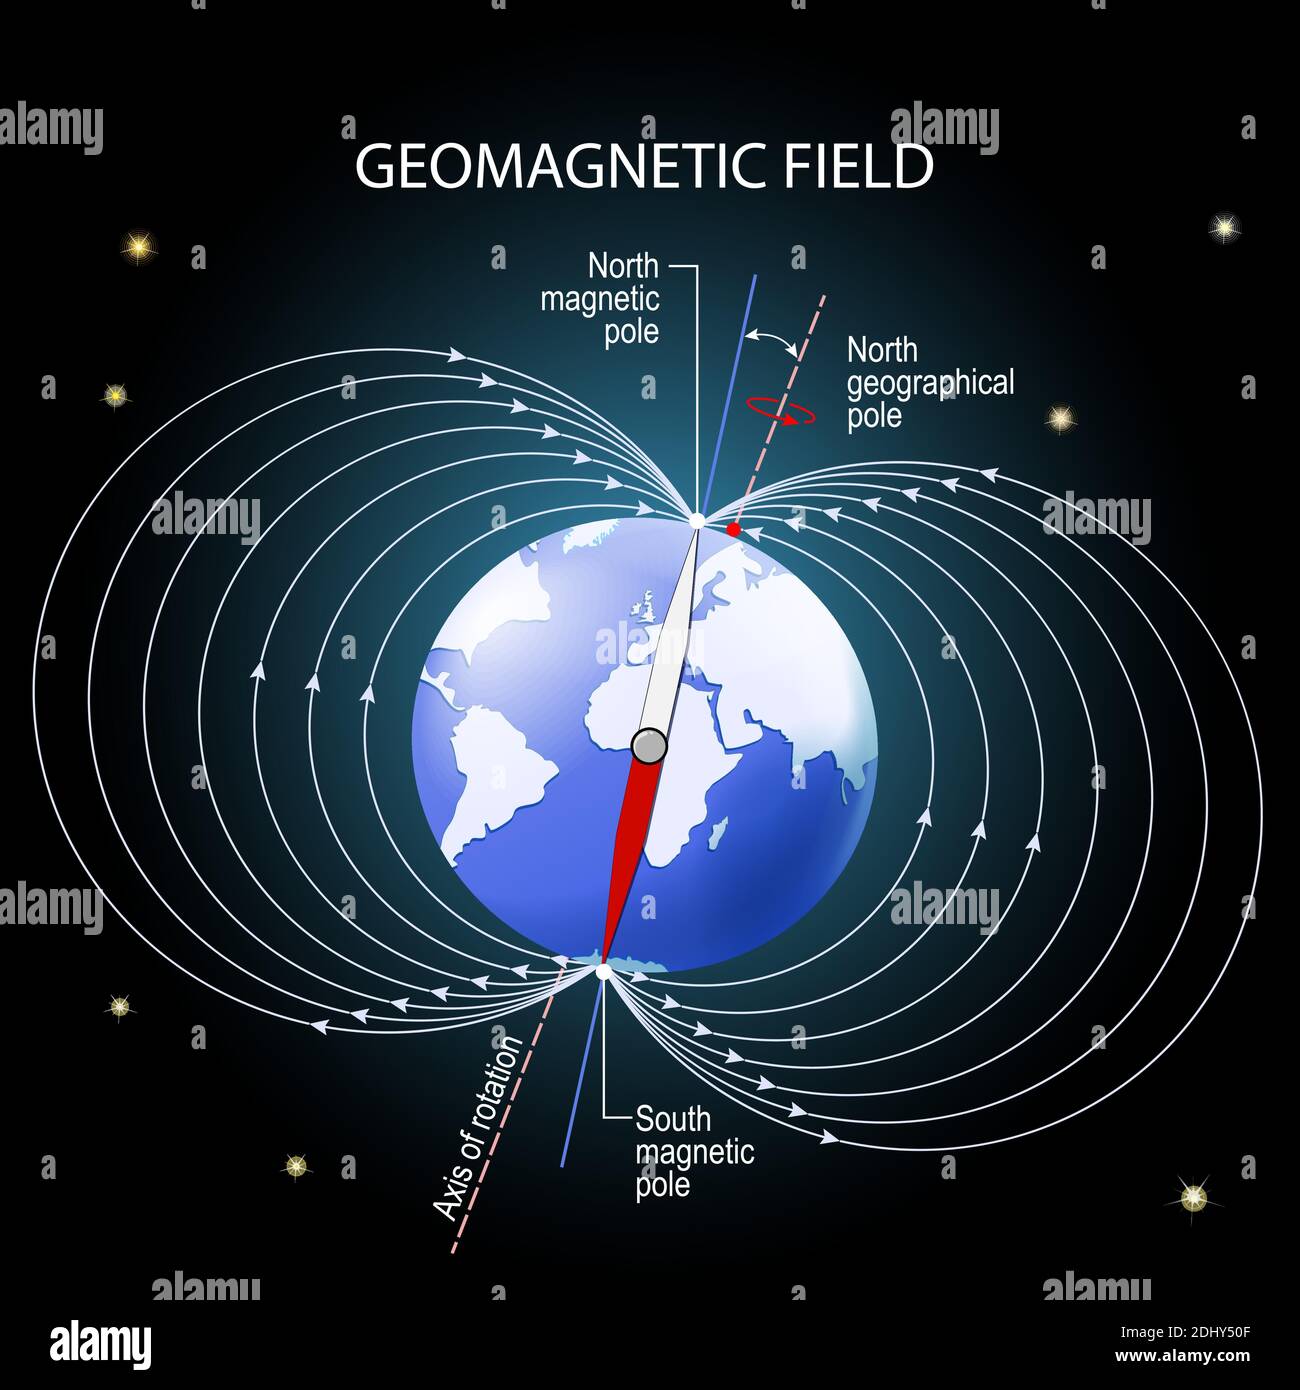 Geomagnetisches oder magnetisches Feld der Erde. Darstellung mit geografischem und magnetischem Nord- und Südpol, magnetischer Achse und Rotationsachse Stock Vektor